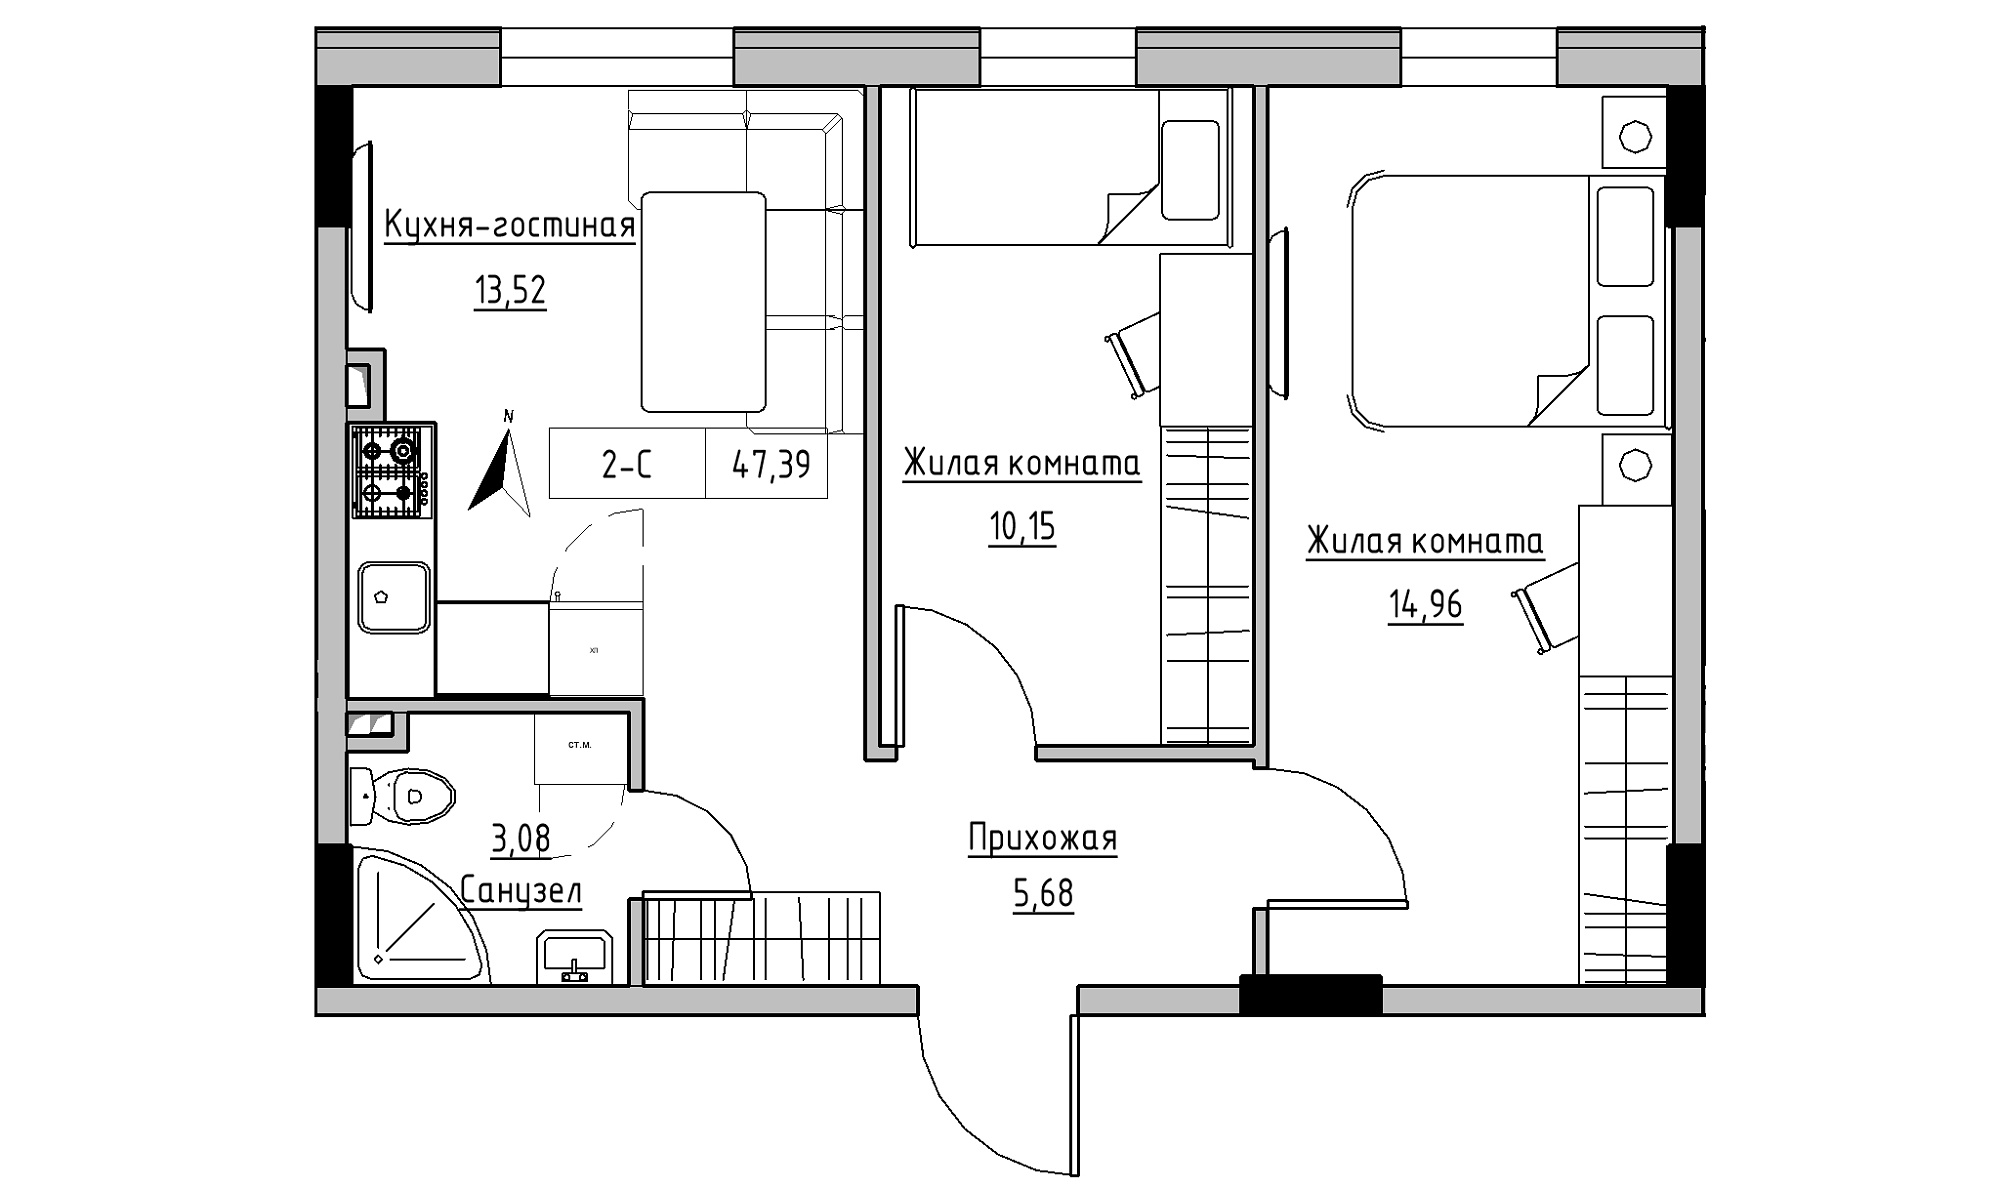 Планування 2-к квартира площею 47.39м2, KS-025-01/0009.